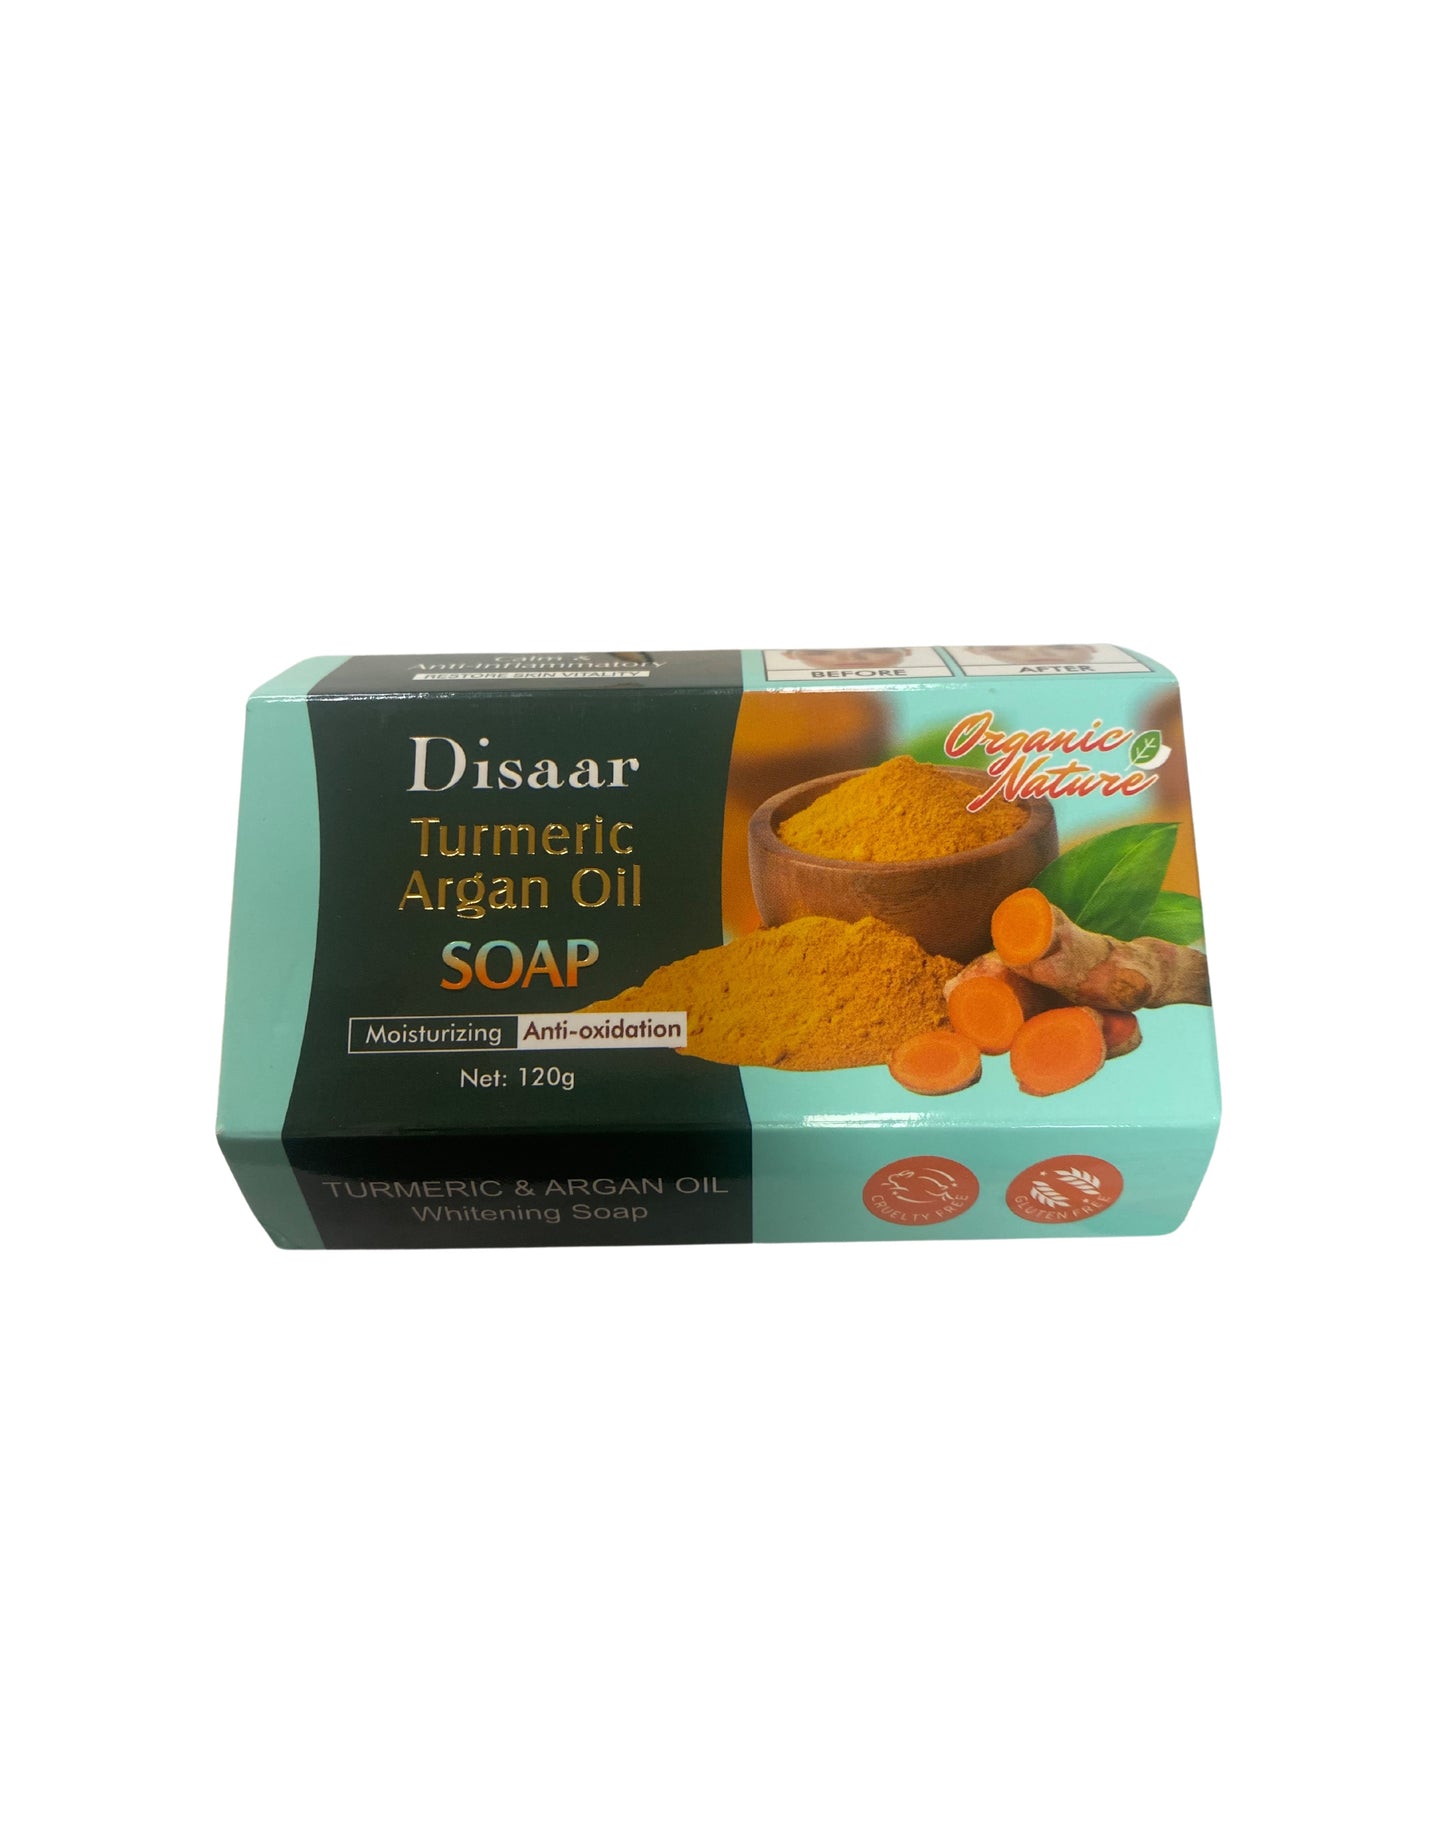 Disaar
Turmeric
Argan Oil
SOAP.